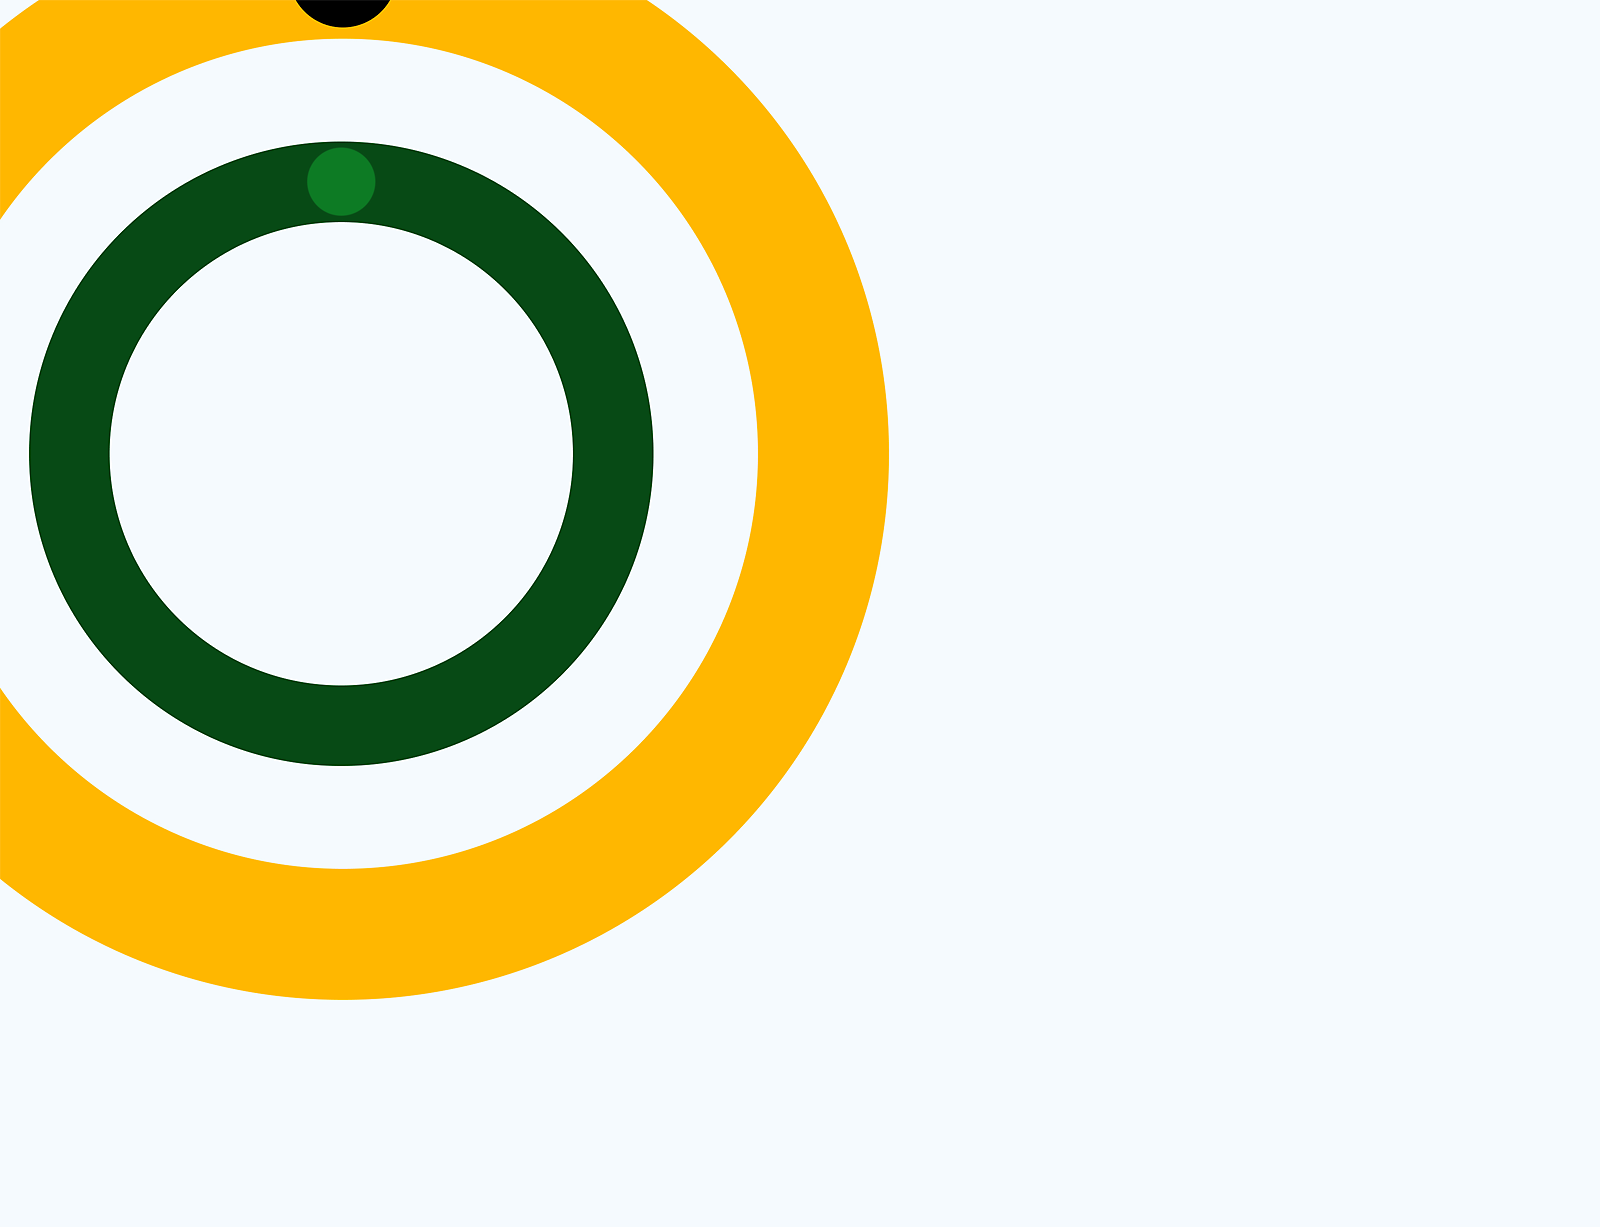 Apstraktna grafika zelenih, žutih i belih koncentričnih krugova na sivoj pozadini.